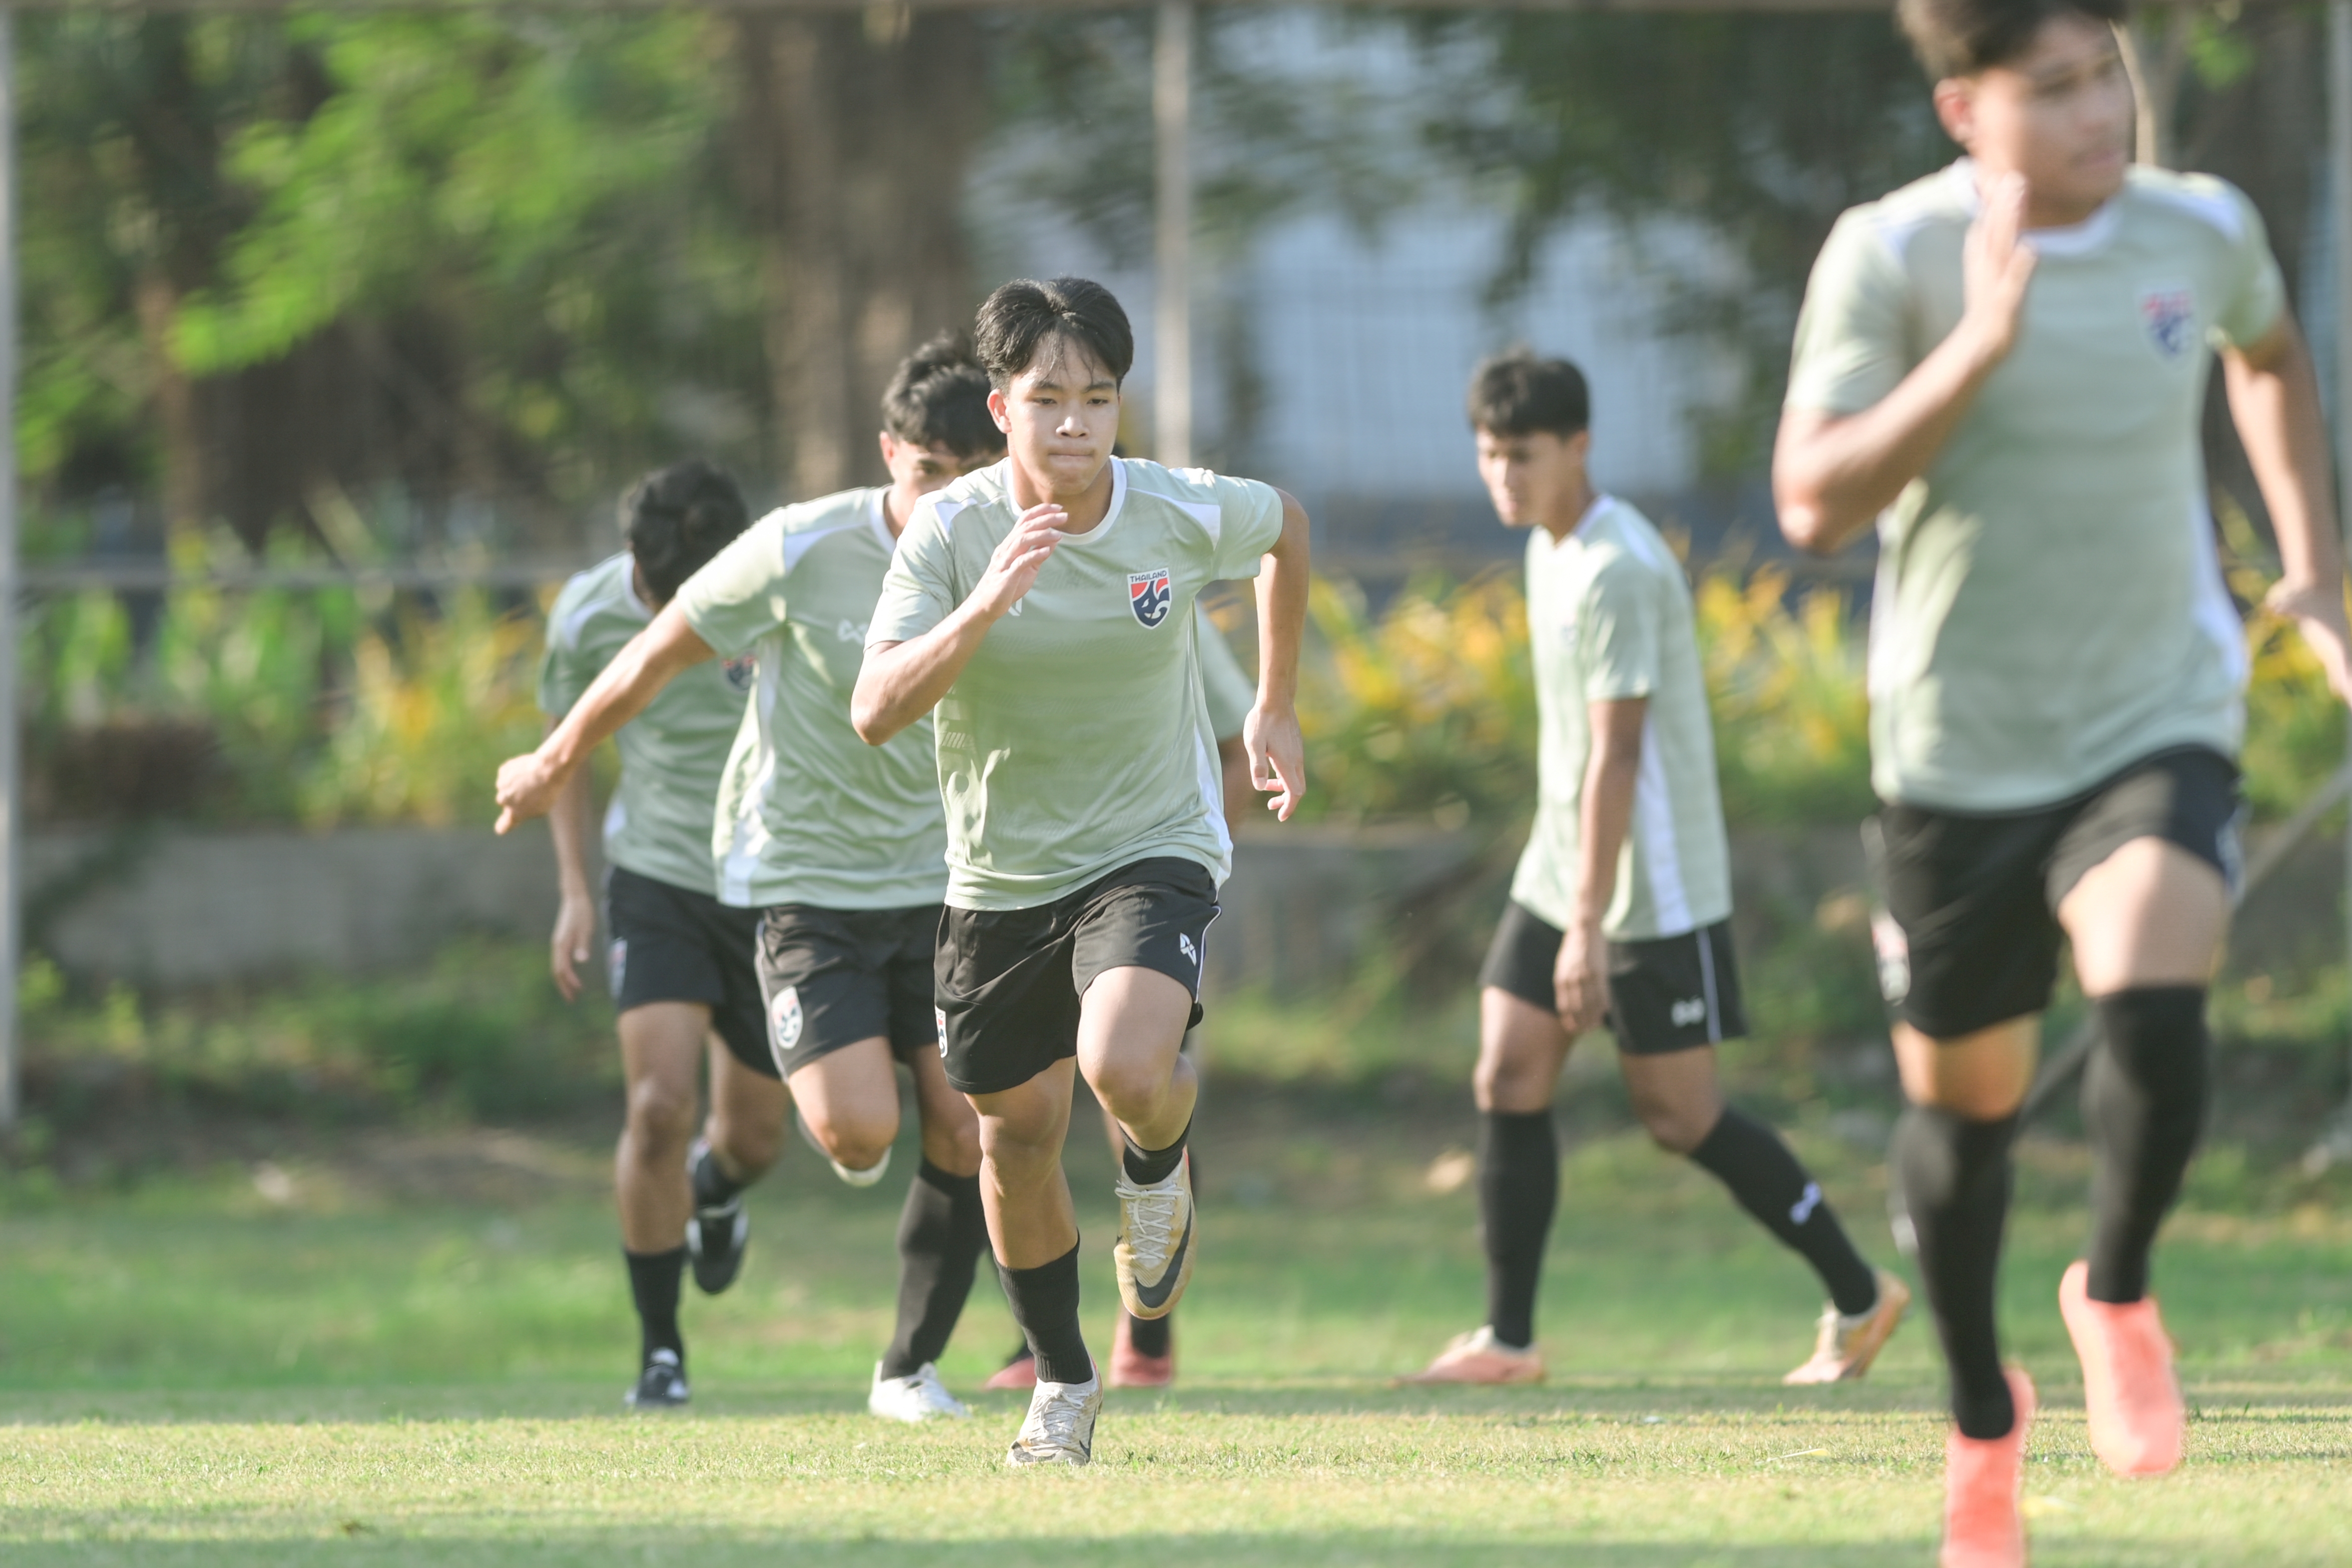 ทีมชาติไทย U20 ซ้อมก่อนเจอบรูไน, พิฆเนศ มองทีมต้องเพิ่มความเข้าใจและความหลากหลาย